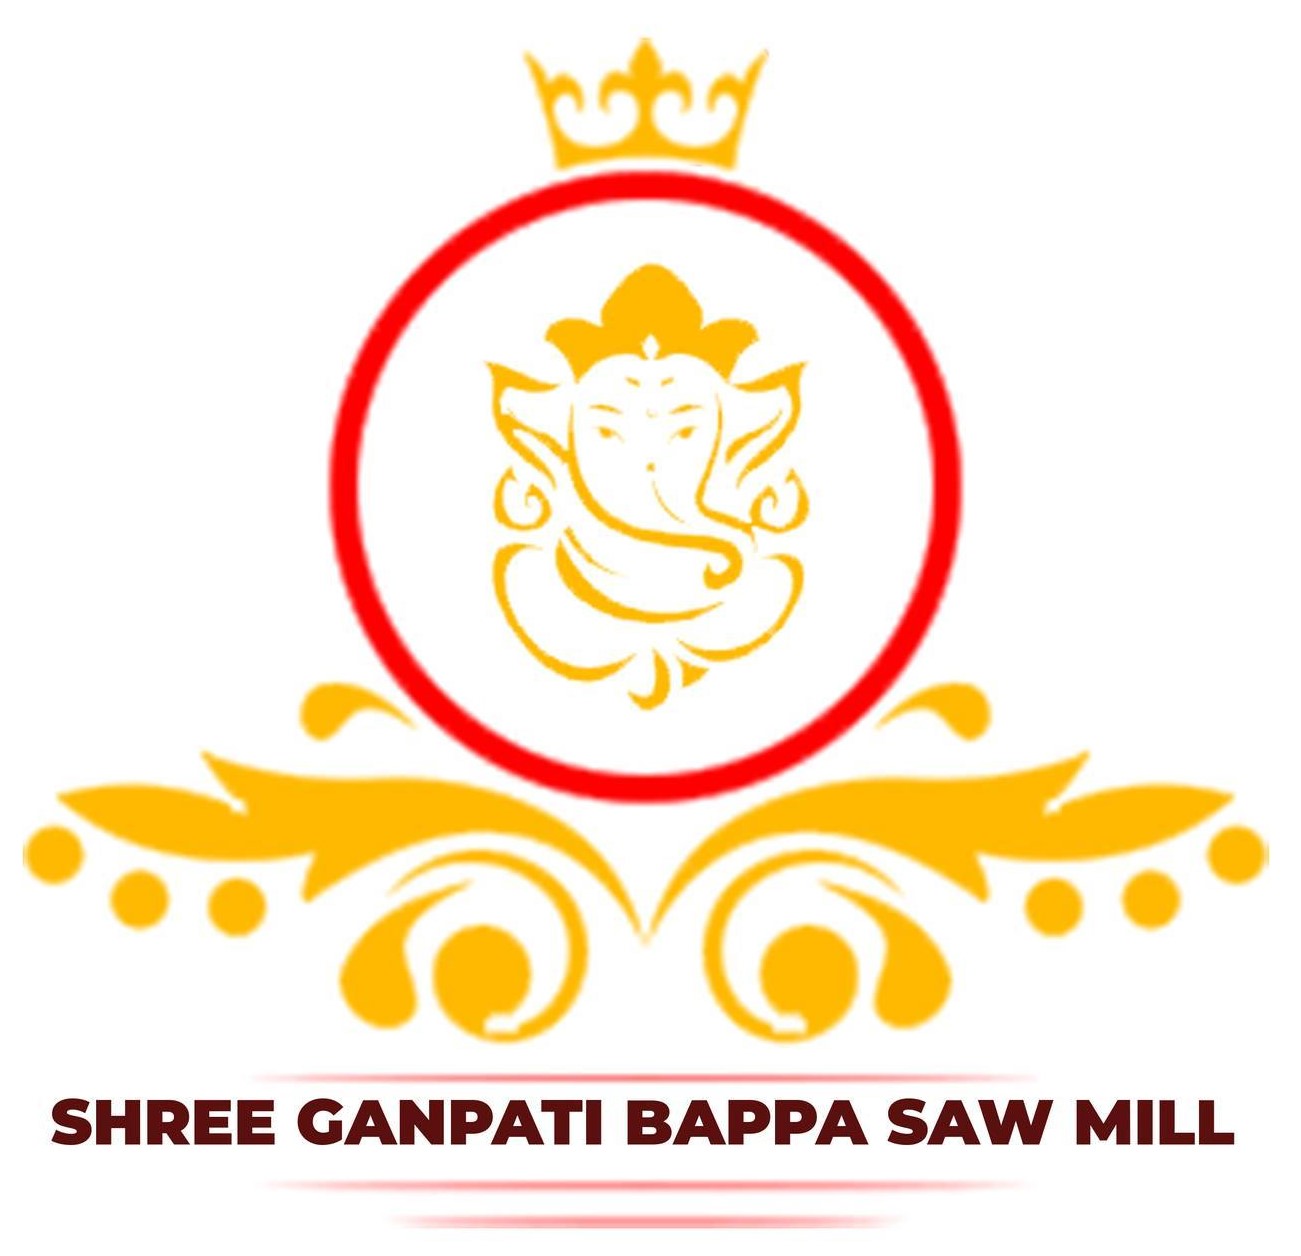 Shree Ganpati Bappa Saw Mill